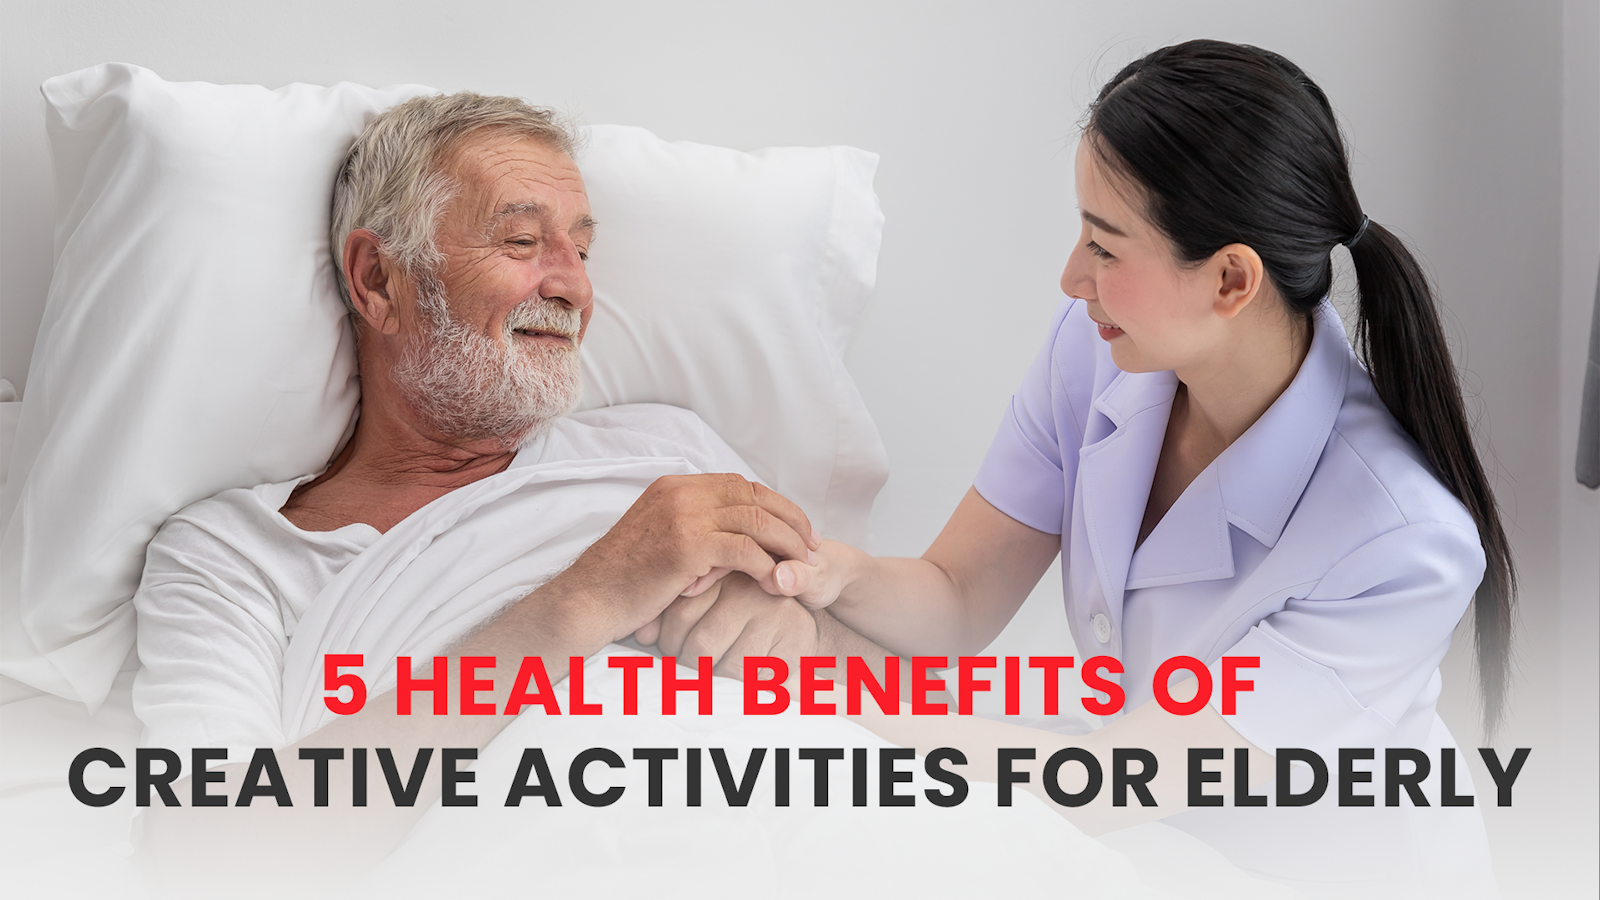 5 HEALTH BENEFITS OF CREATIVE ACTIVITIES FOR ELDERLY